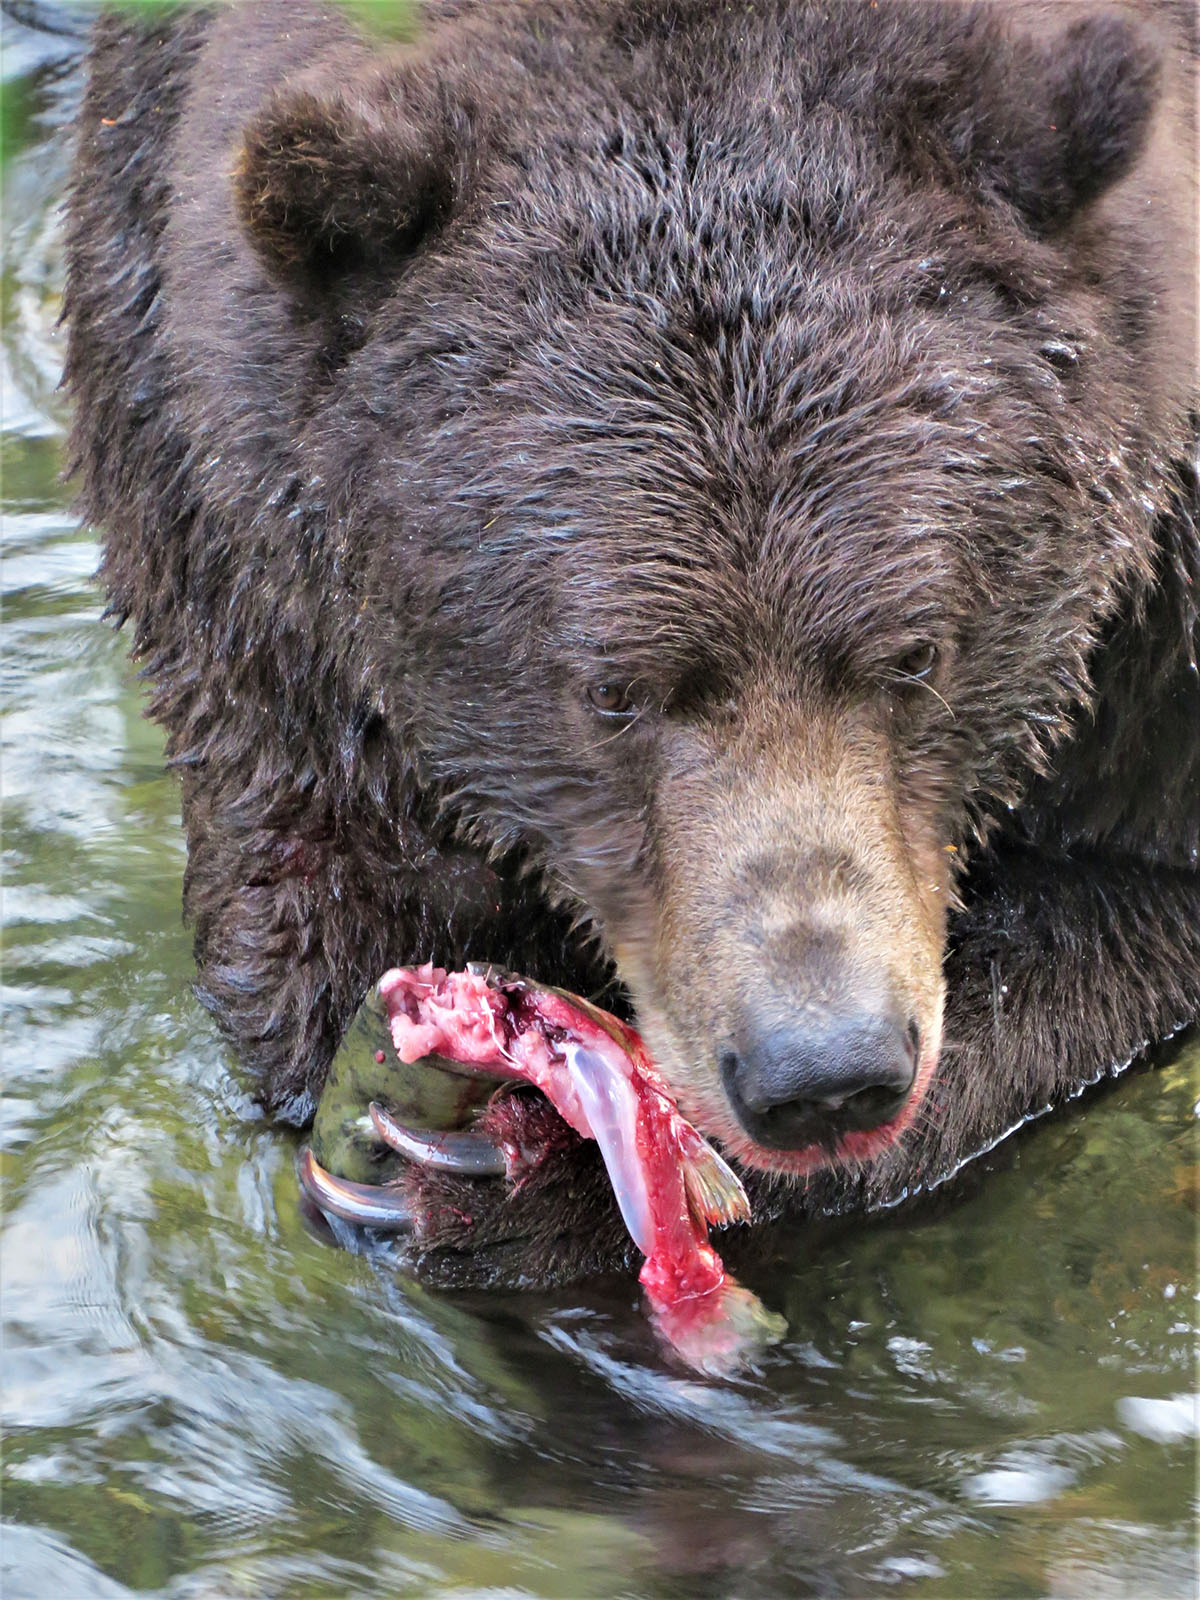 Brown bear eating salmon.